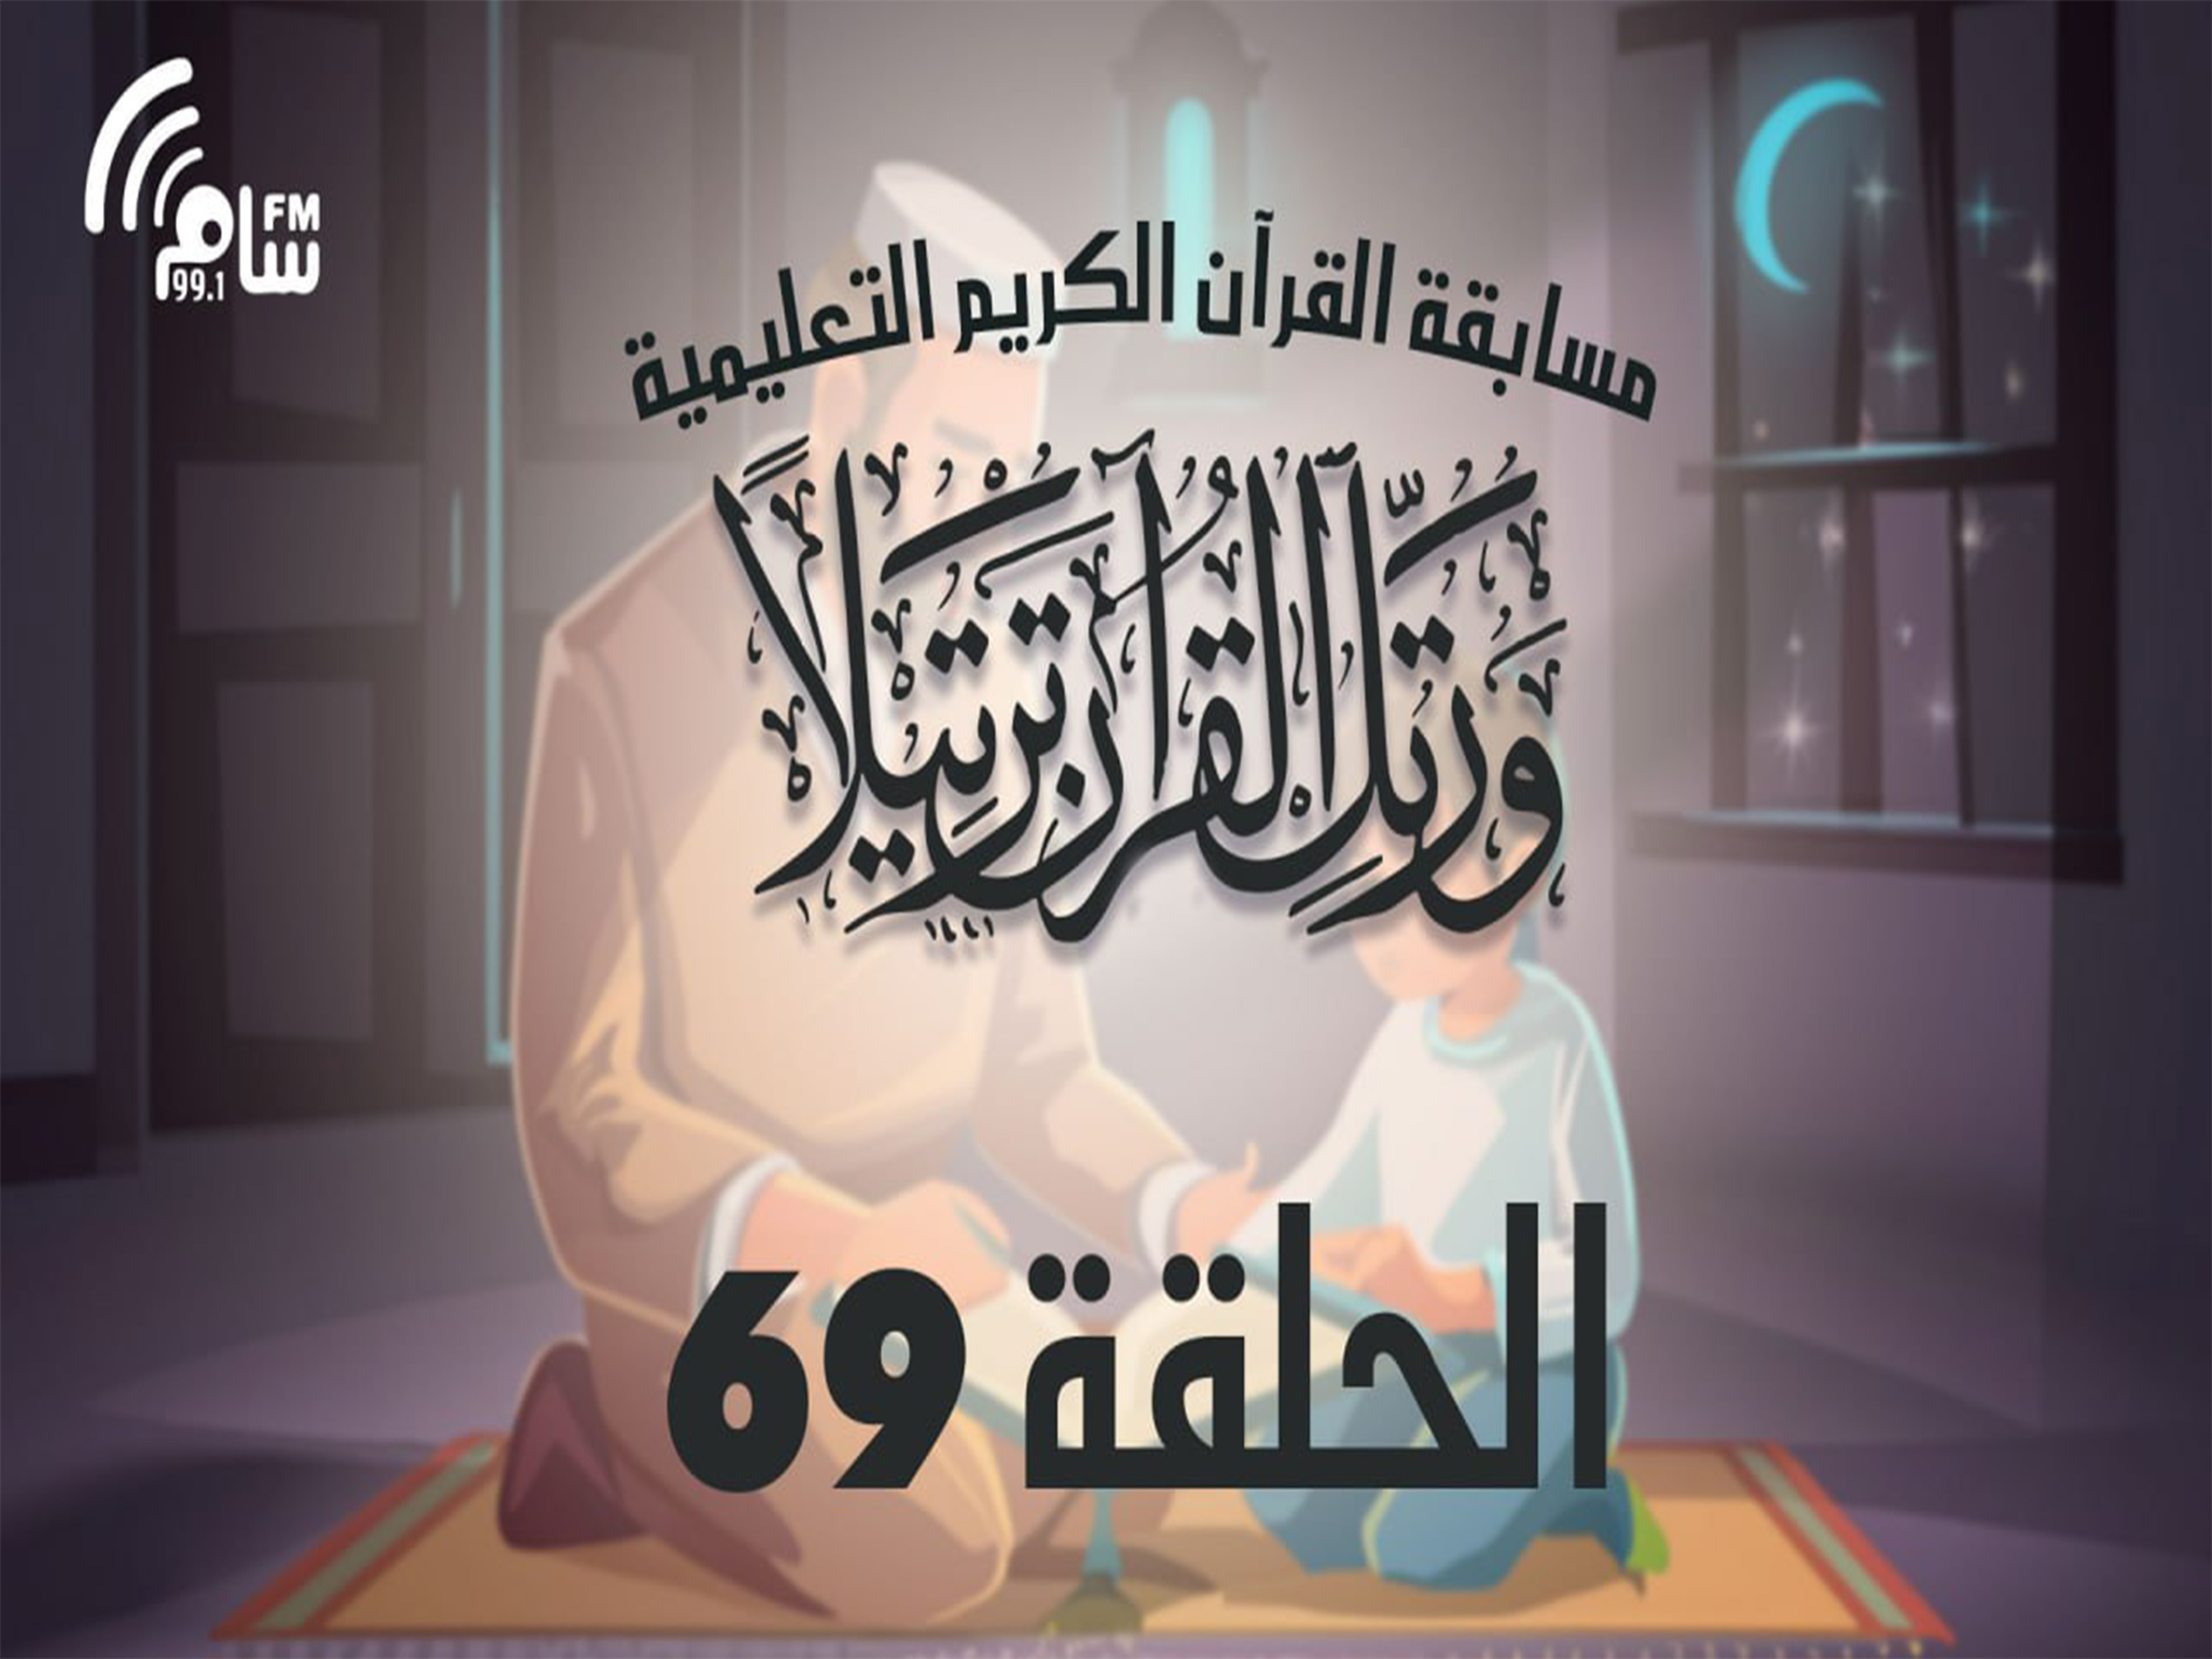 مسابقة القرآن الكريم الحلقة 69 انتاج اذاعة اسام اف ام